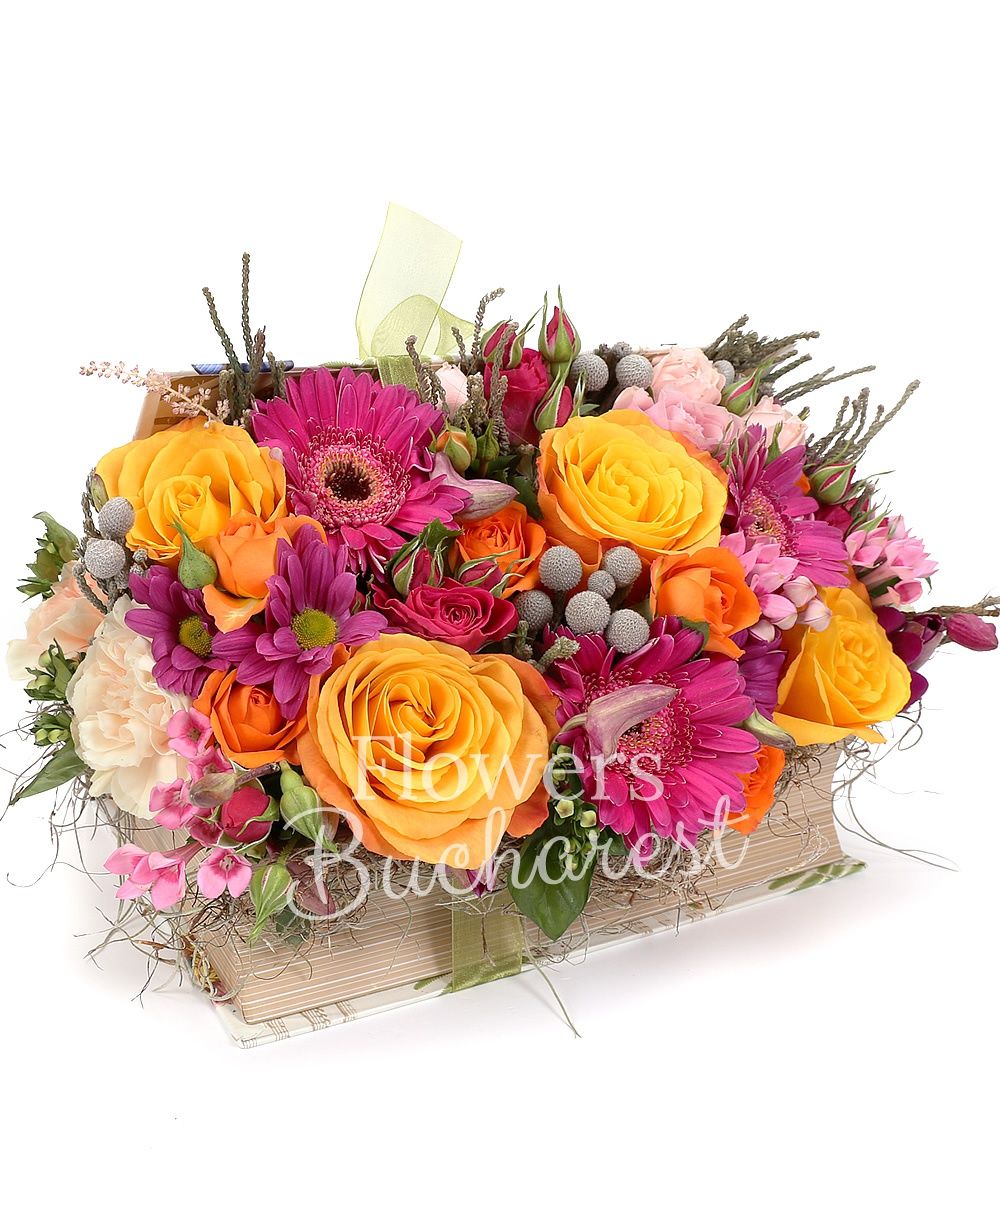 4 orange roses, 2 pink roses, 3 cyclam gerbera, 3 pink bouvardia, 3 cyclam miniroses, 2 pink miniroses, brunia, cyclam chrysanthemum, 5 cream carnations, book